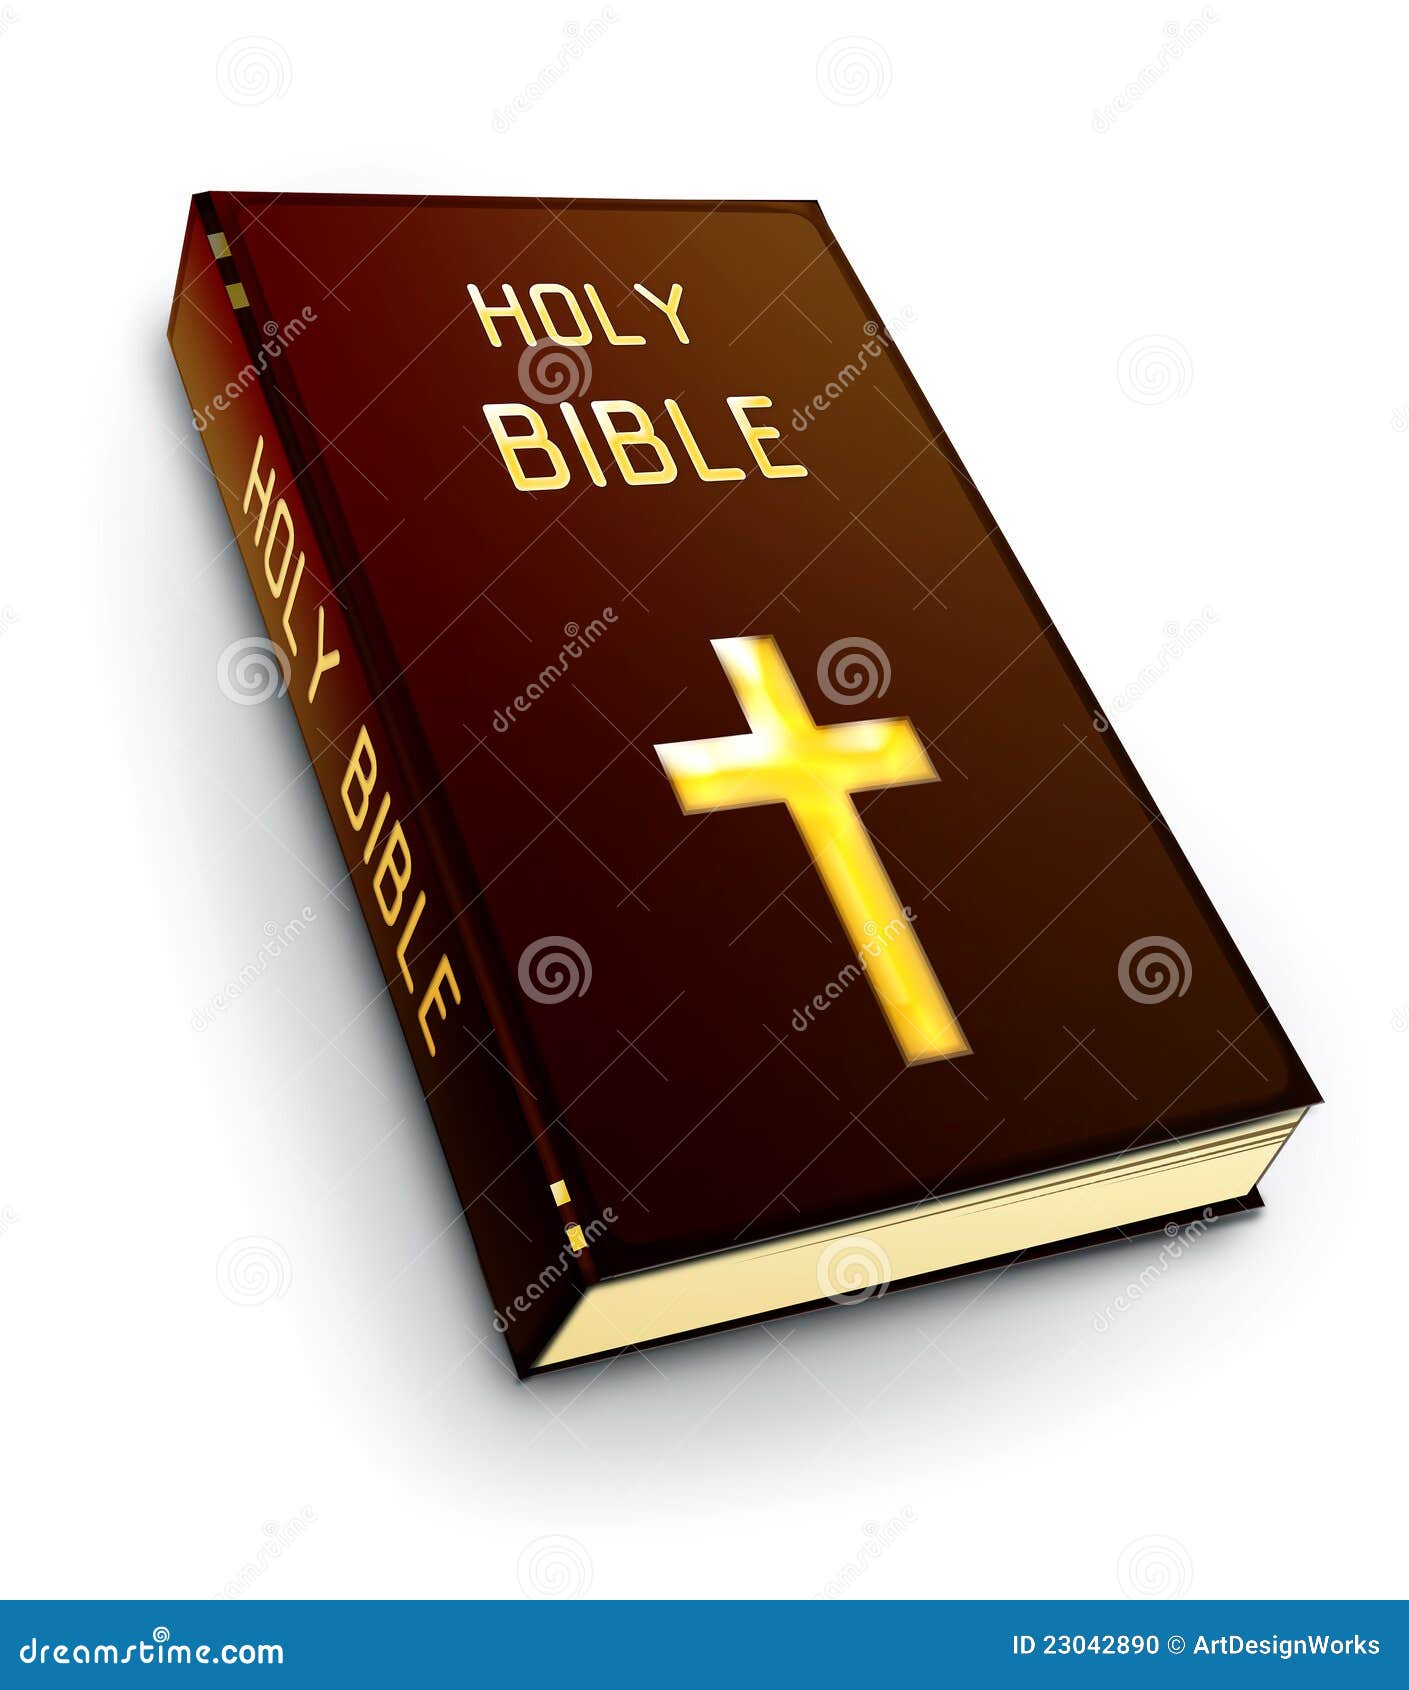 Holy bible stock illustration. Illustration of catholic - 23042890